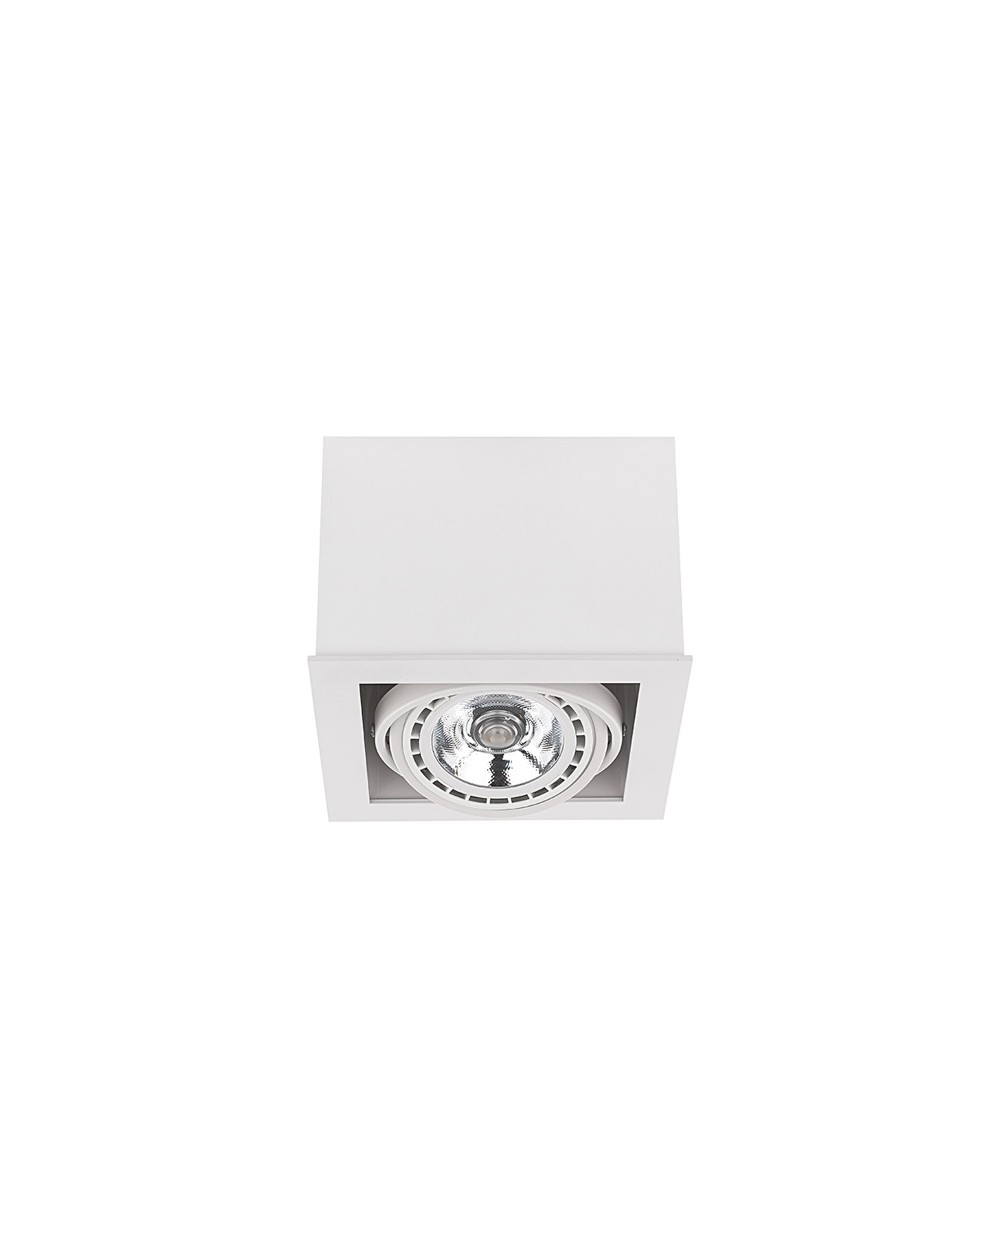 Lampa sufitowa, plafon BOX ES111 - Nowodvorski Oświetlenie wewnętrzne